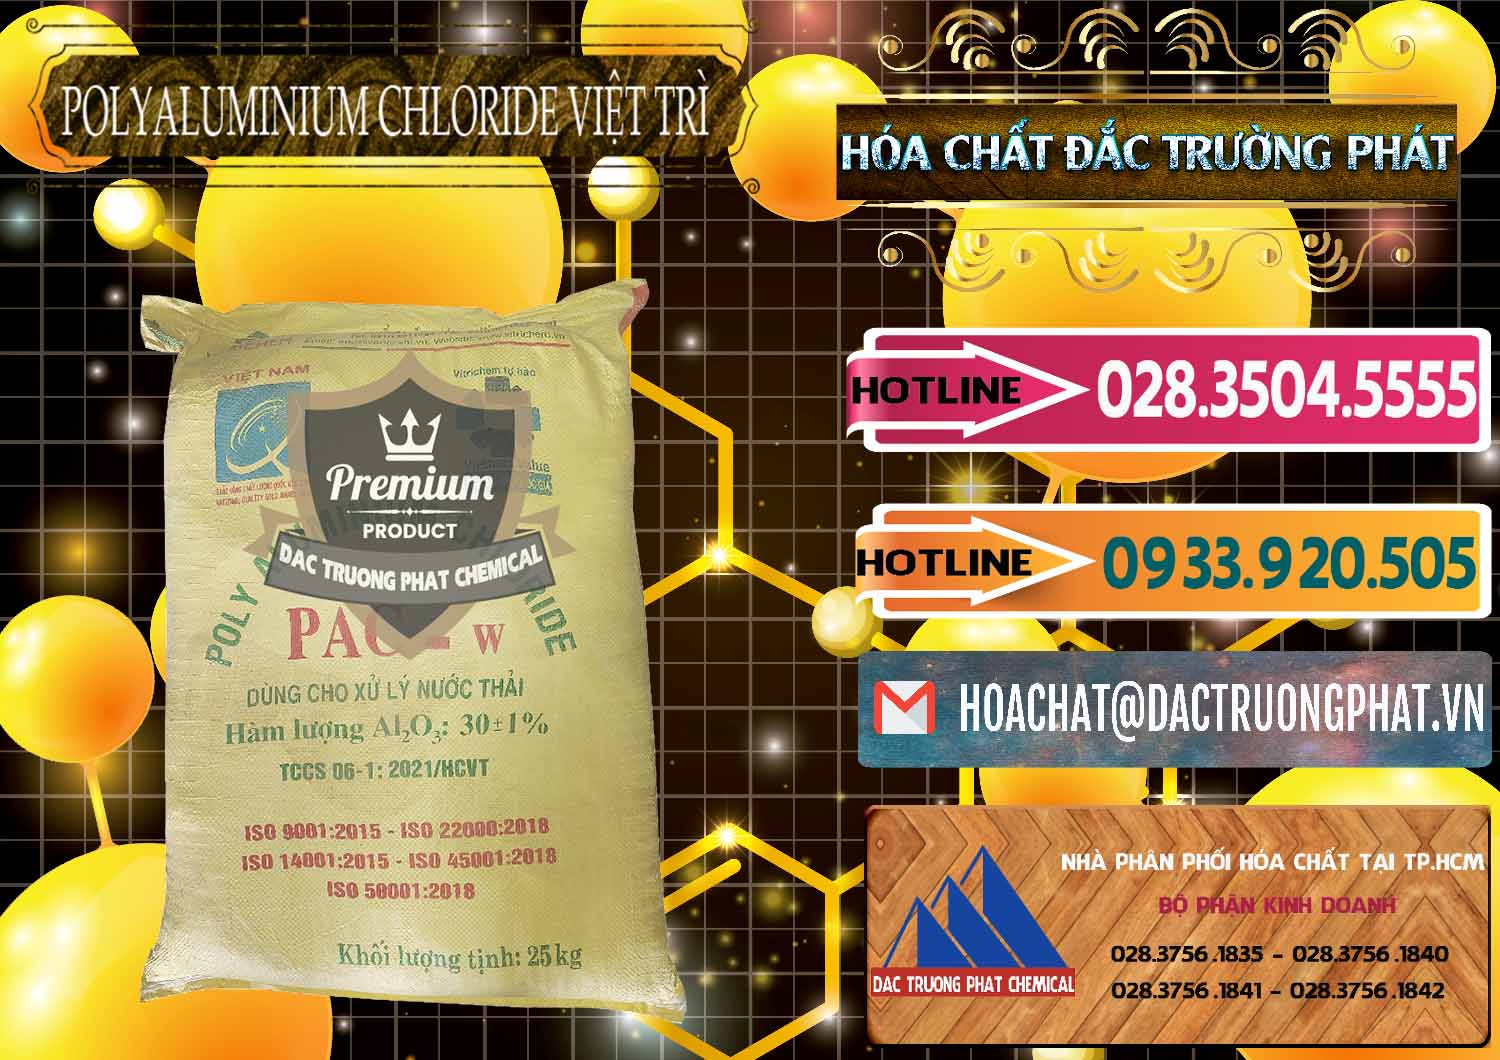 Cty phân phối & bán PAC - Polyaluminium Chloride Việt Trì Việt Nam - 0487 - Phân phối và kinh doanh hóa chất tại TP.HCM - dactruongphat.vn